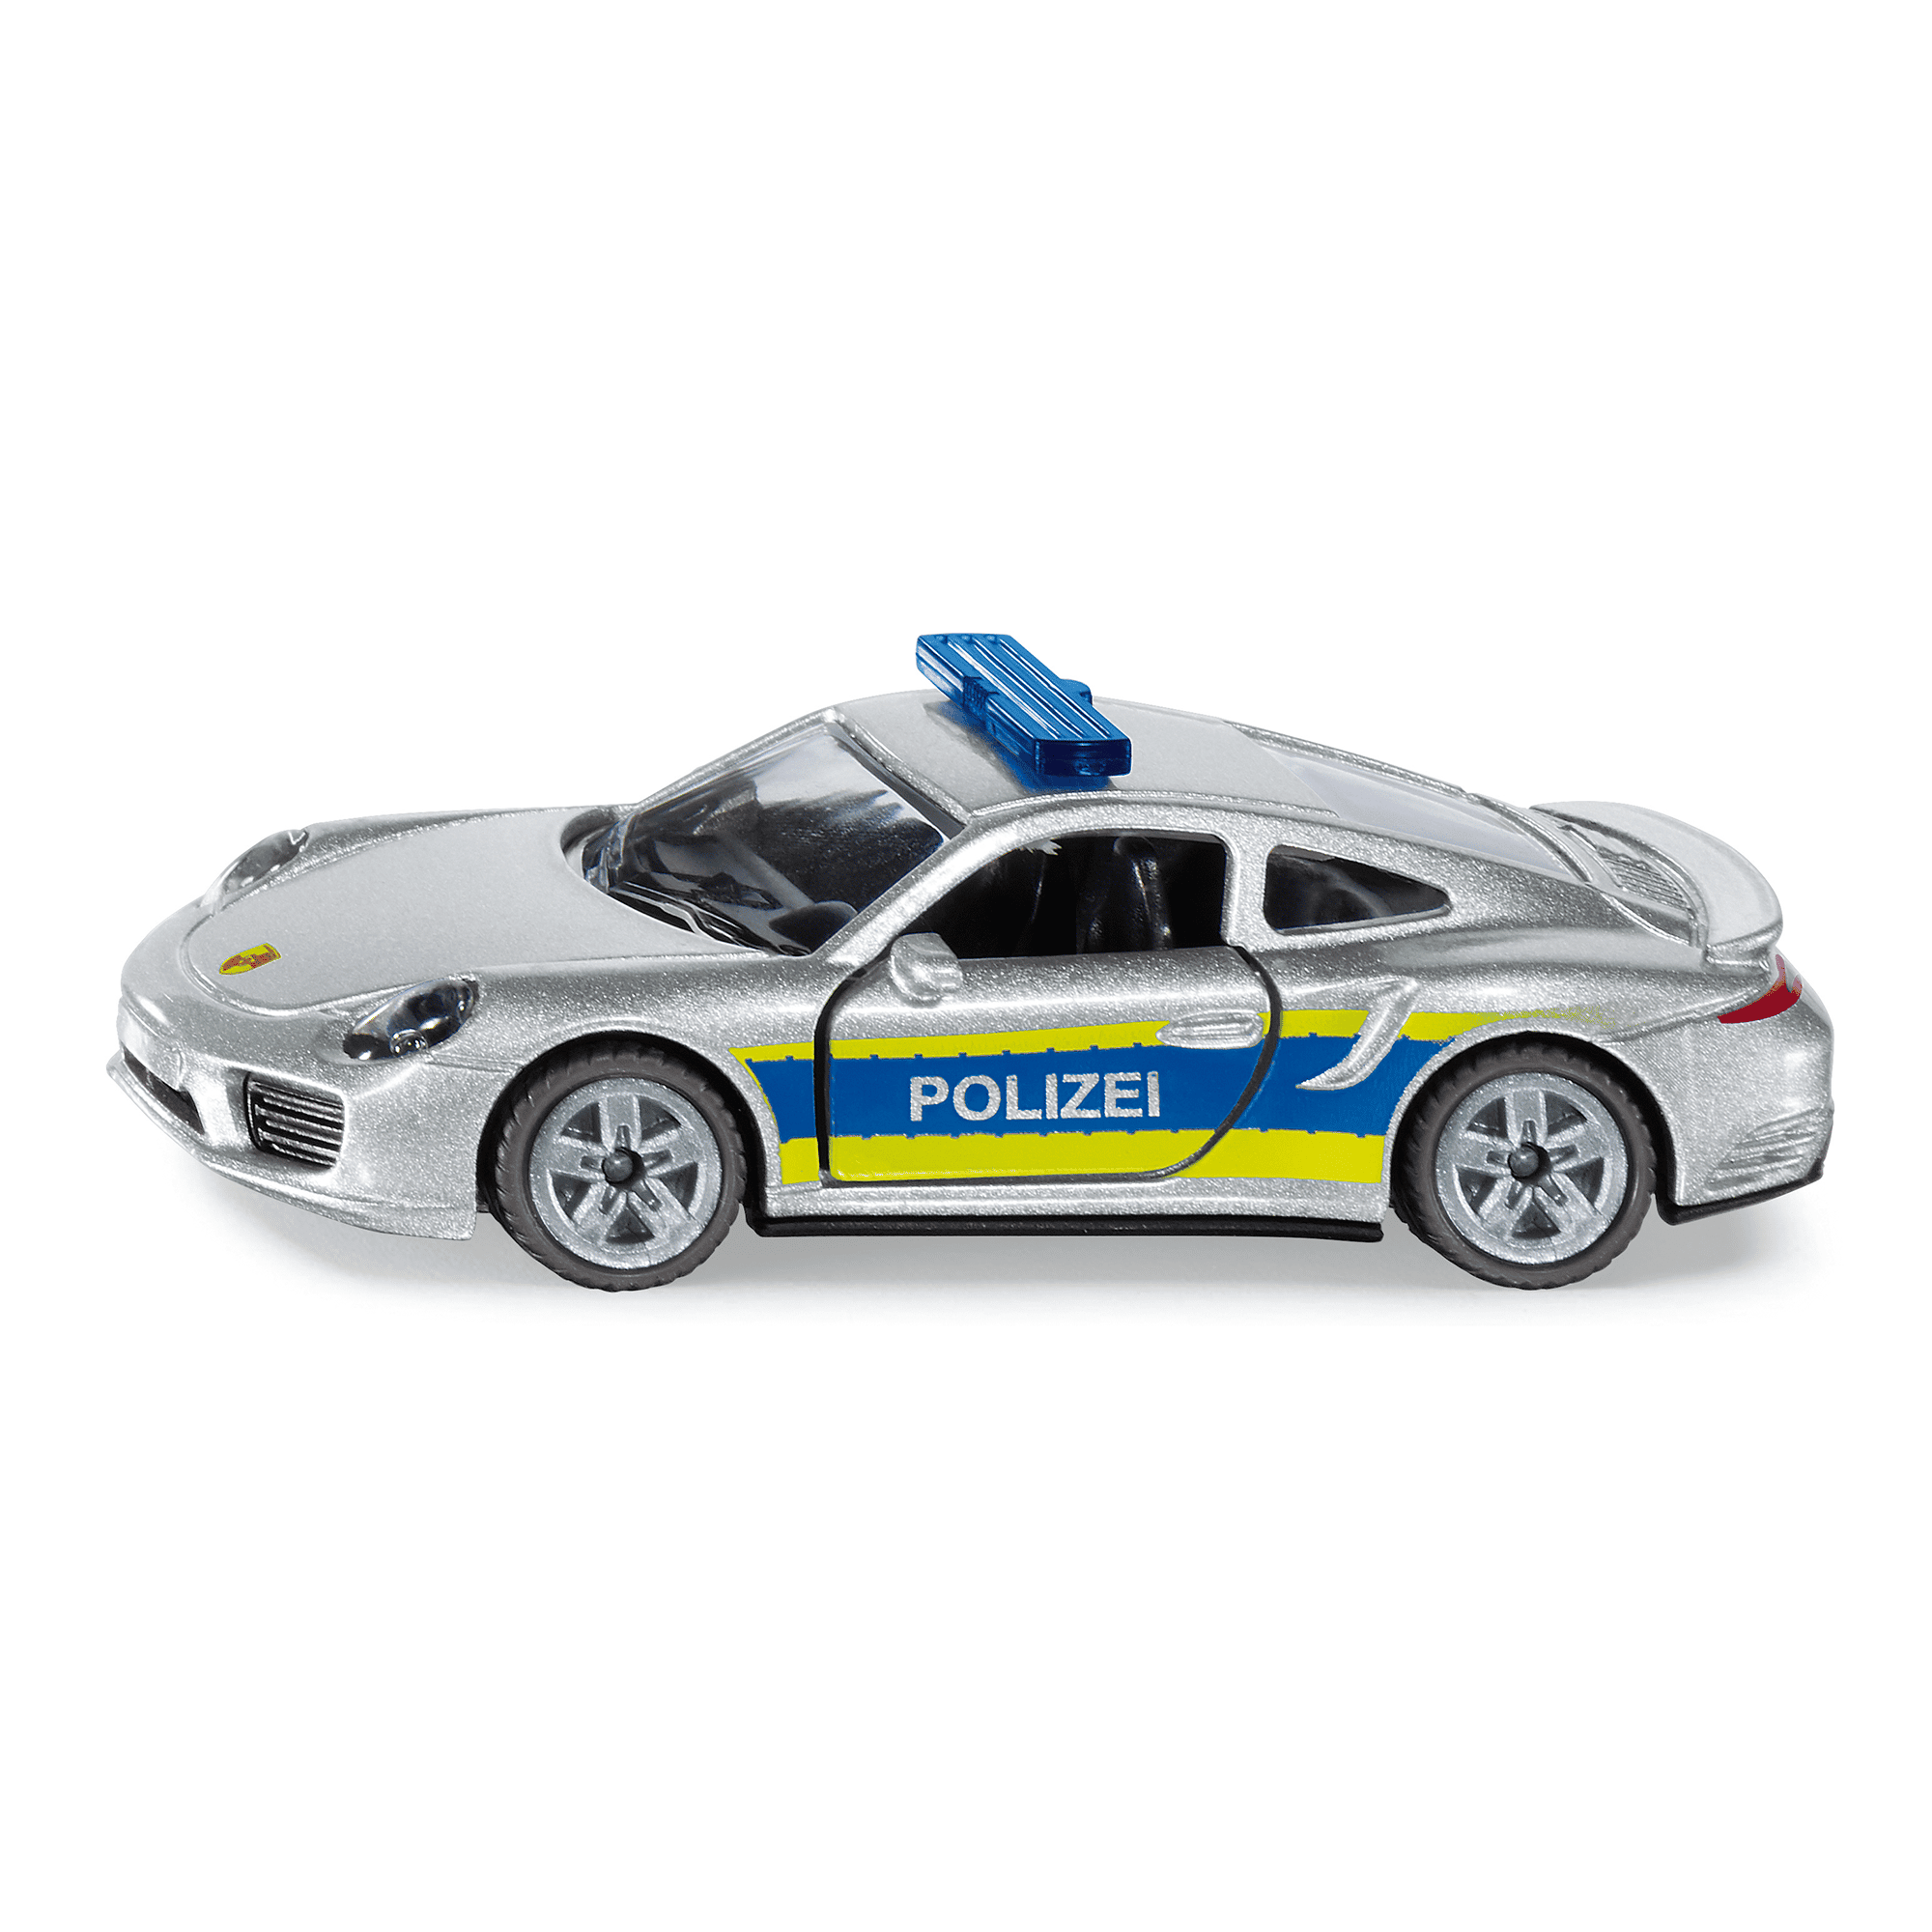 Porsche 911 Autobahnpolizei (1528) siku 2000579632303 1